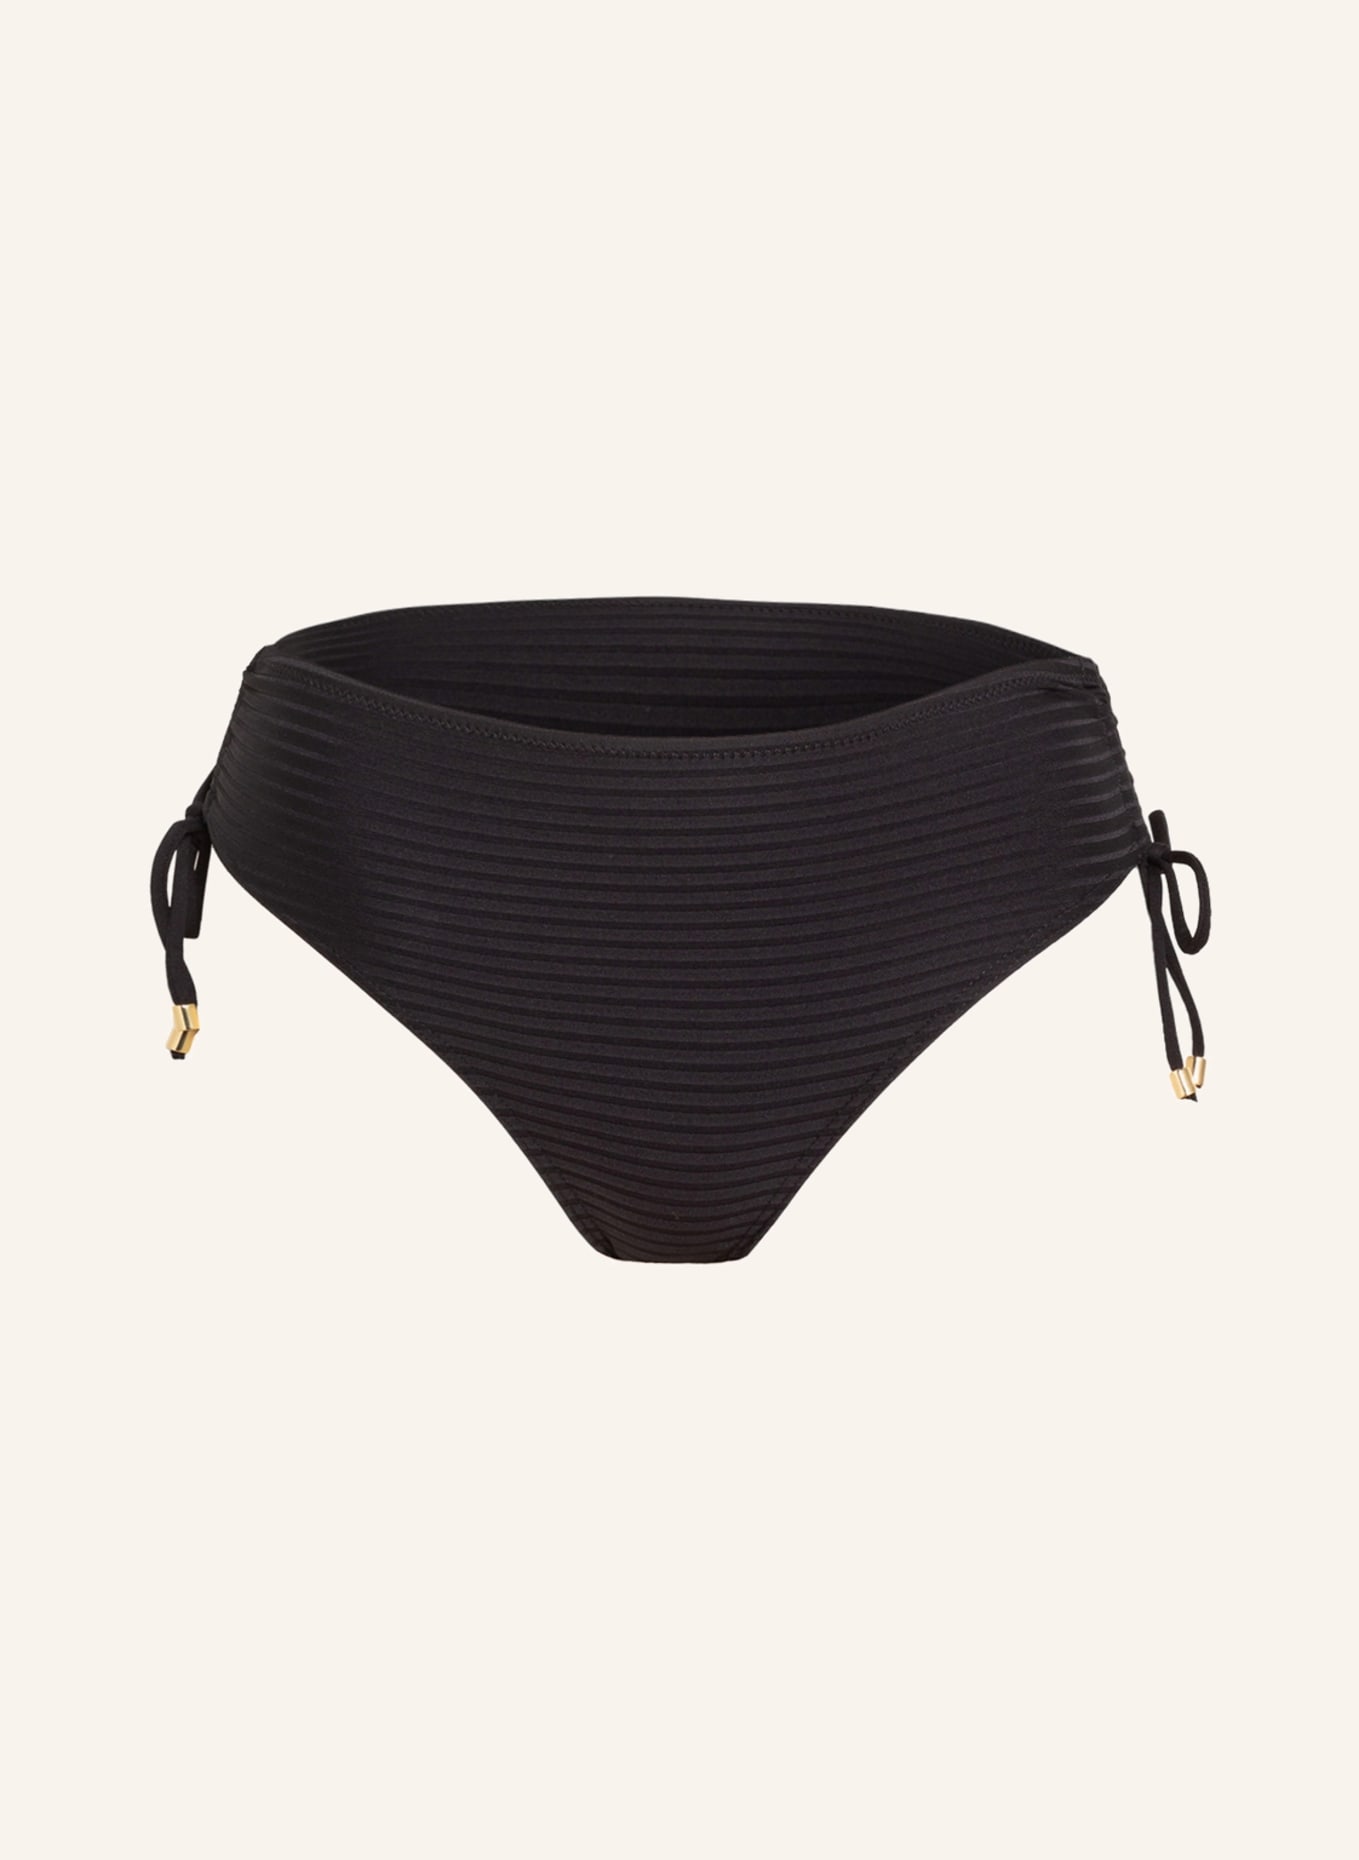 CYELL Panty bikini bottoms , Color: BLACK (Image 1)